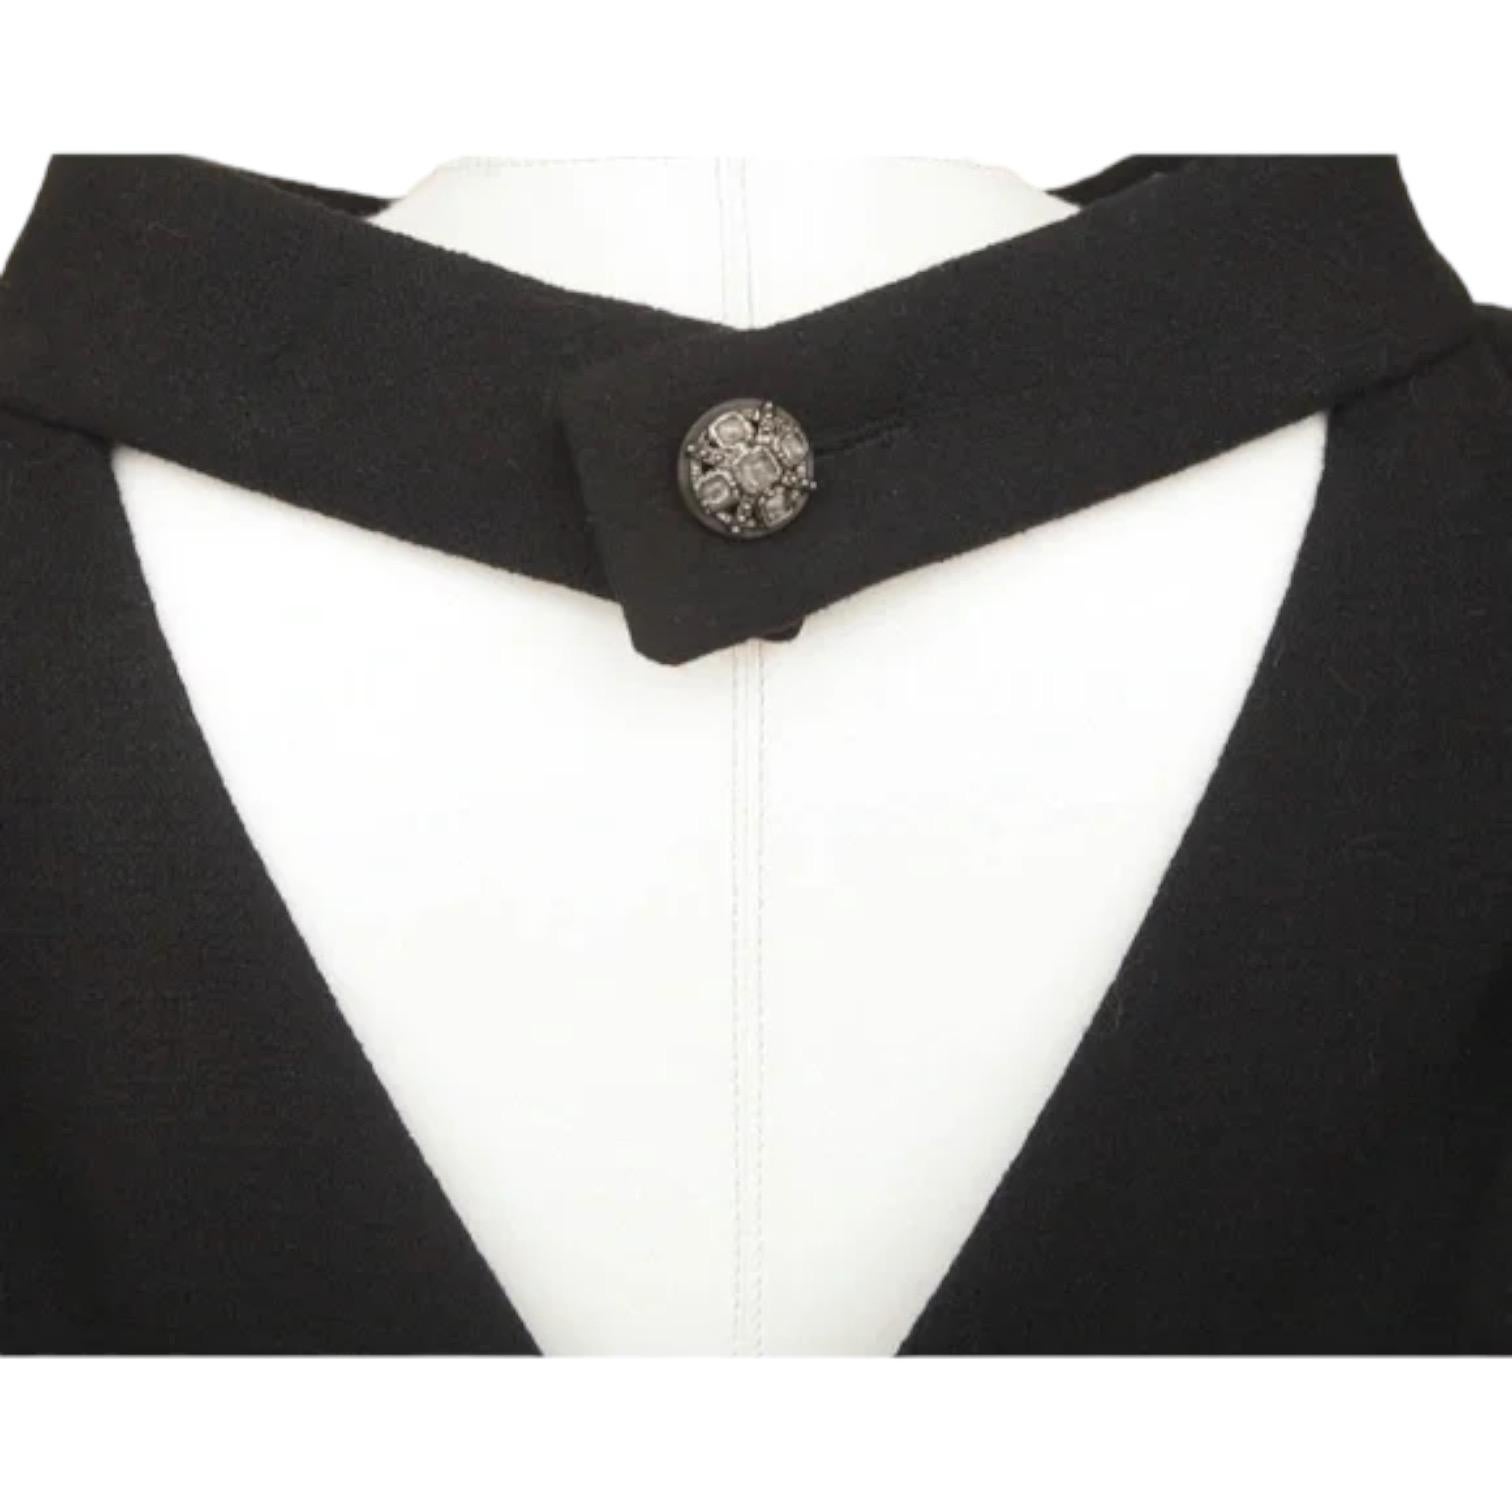 CHANEL Black Dress Sleeveless Shift Cowl Neck Cutout Wool Sz 40 Fall 2012 1